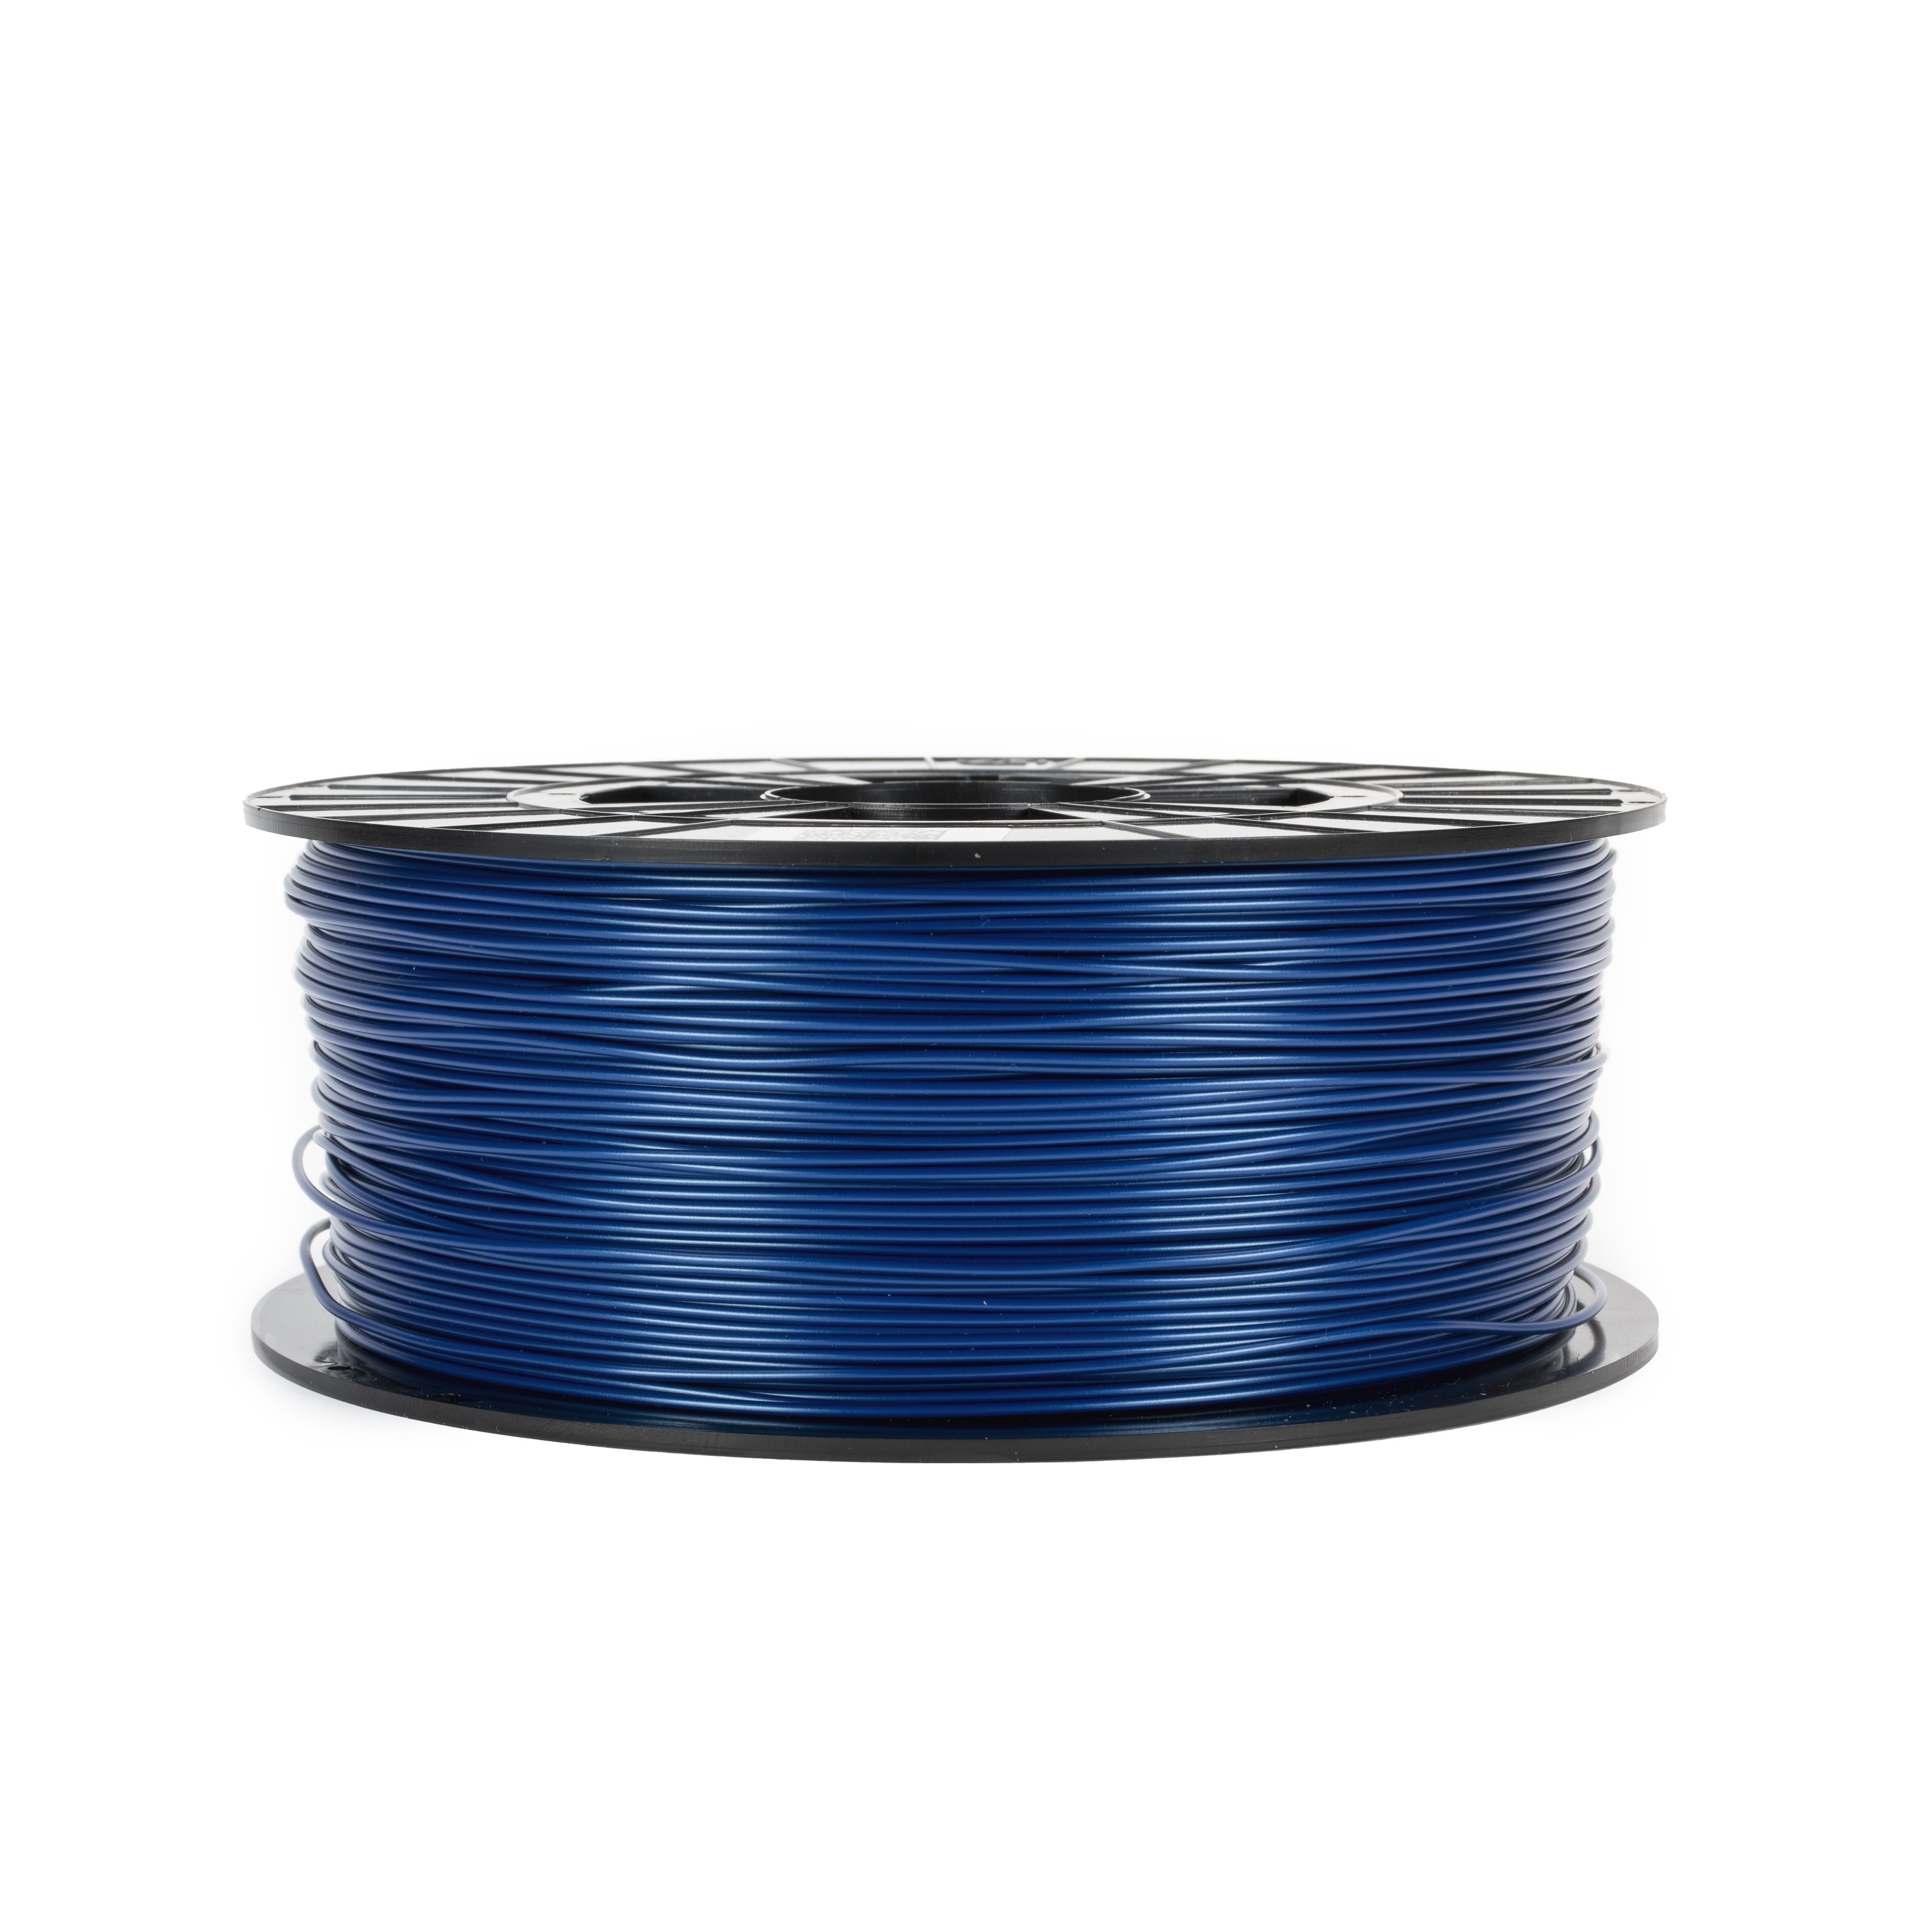 Filamento Blu perlato PLA 1kg  Stampanti 3D Original Prusa direttamente da  Josef Prusa